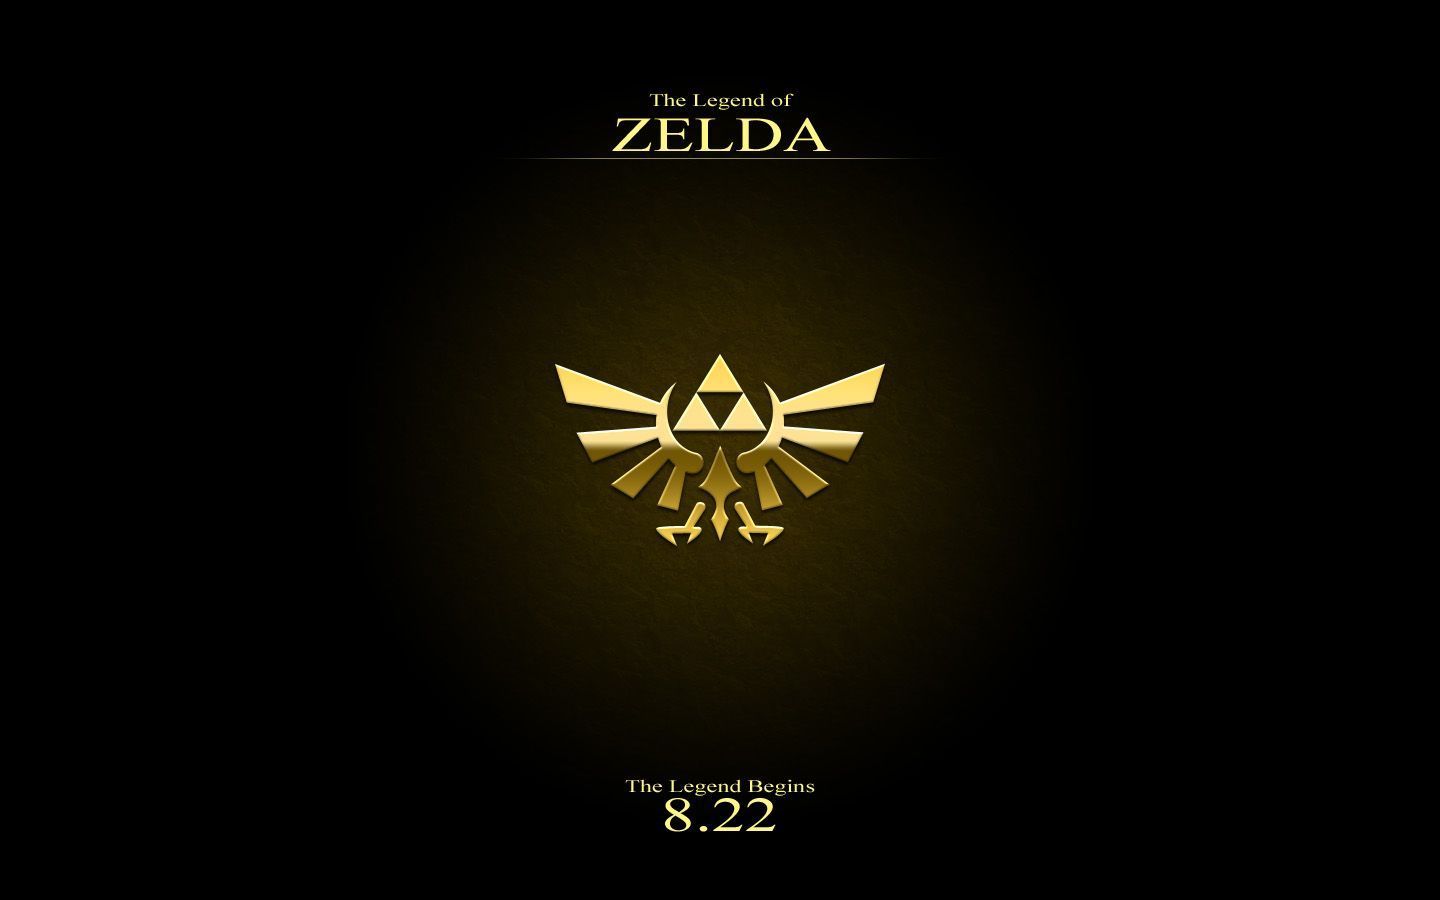 Zelda Wallpaper | 1440x900 | ID:22802